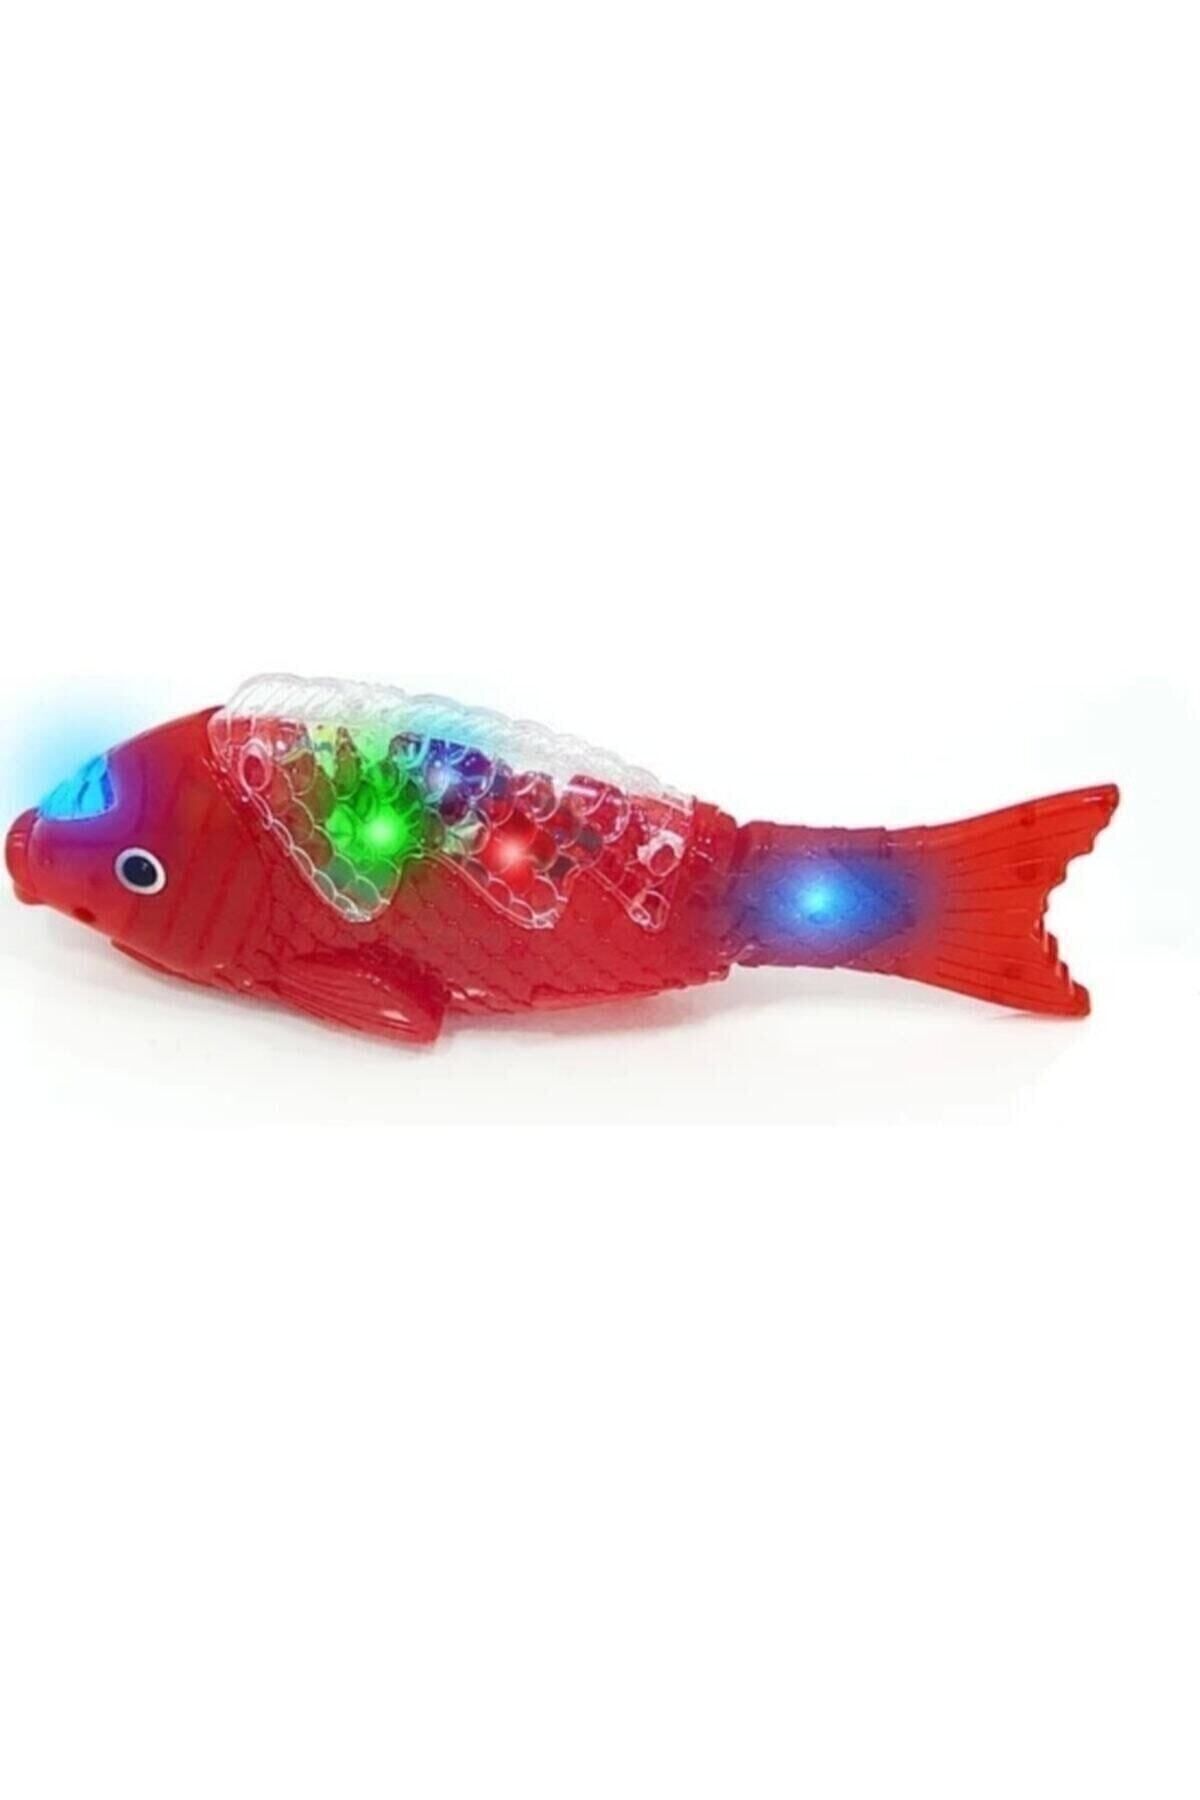 Canbay Store Kırmızı Balık Şarkılı Müzikli Işıklı Sesli Yürüyen Balık 23 Cm Pilli Oyuncak Balık Canbays